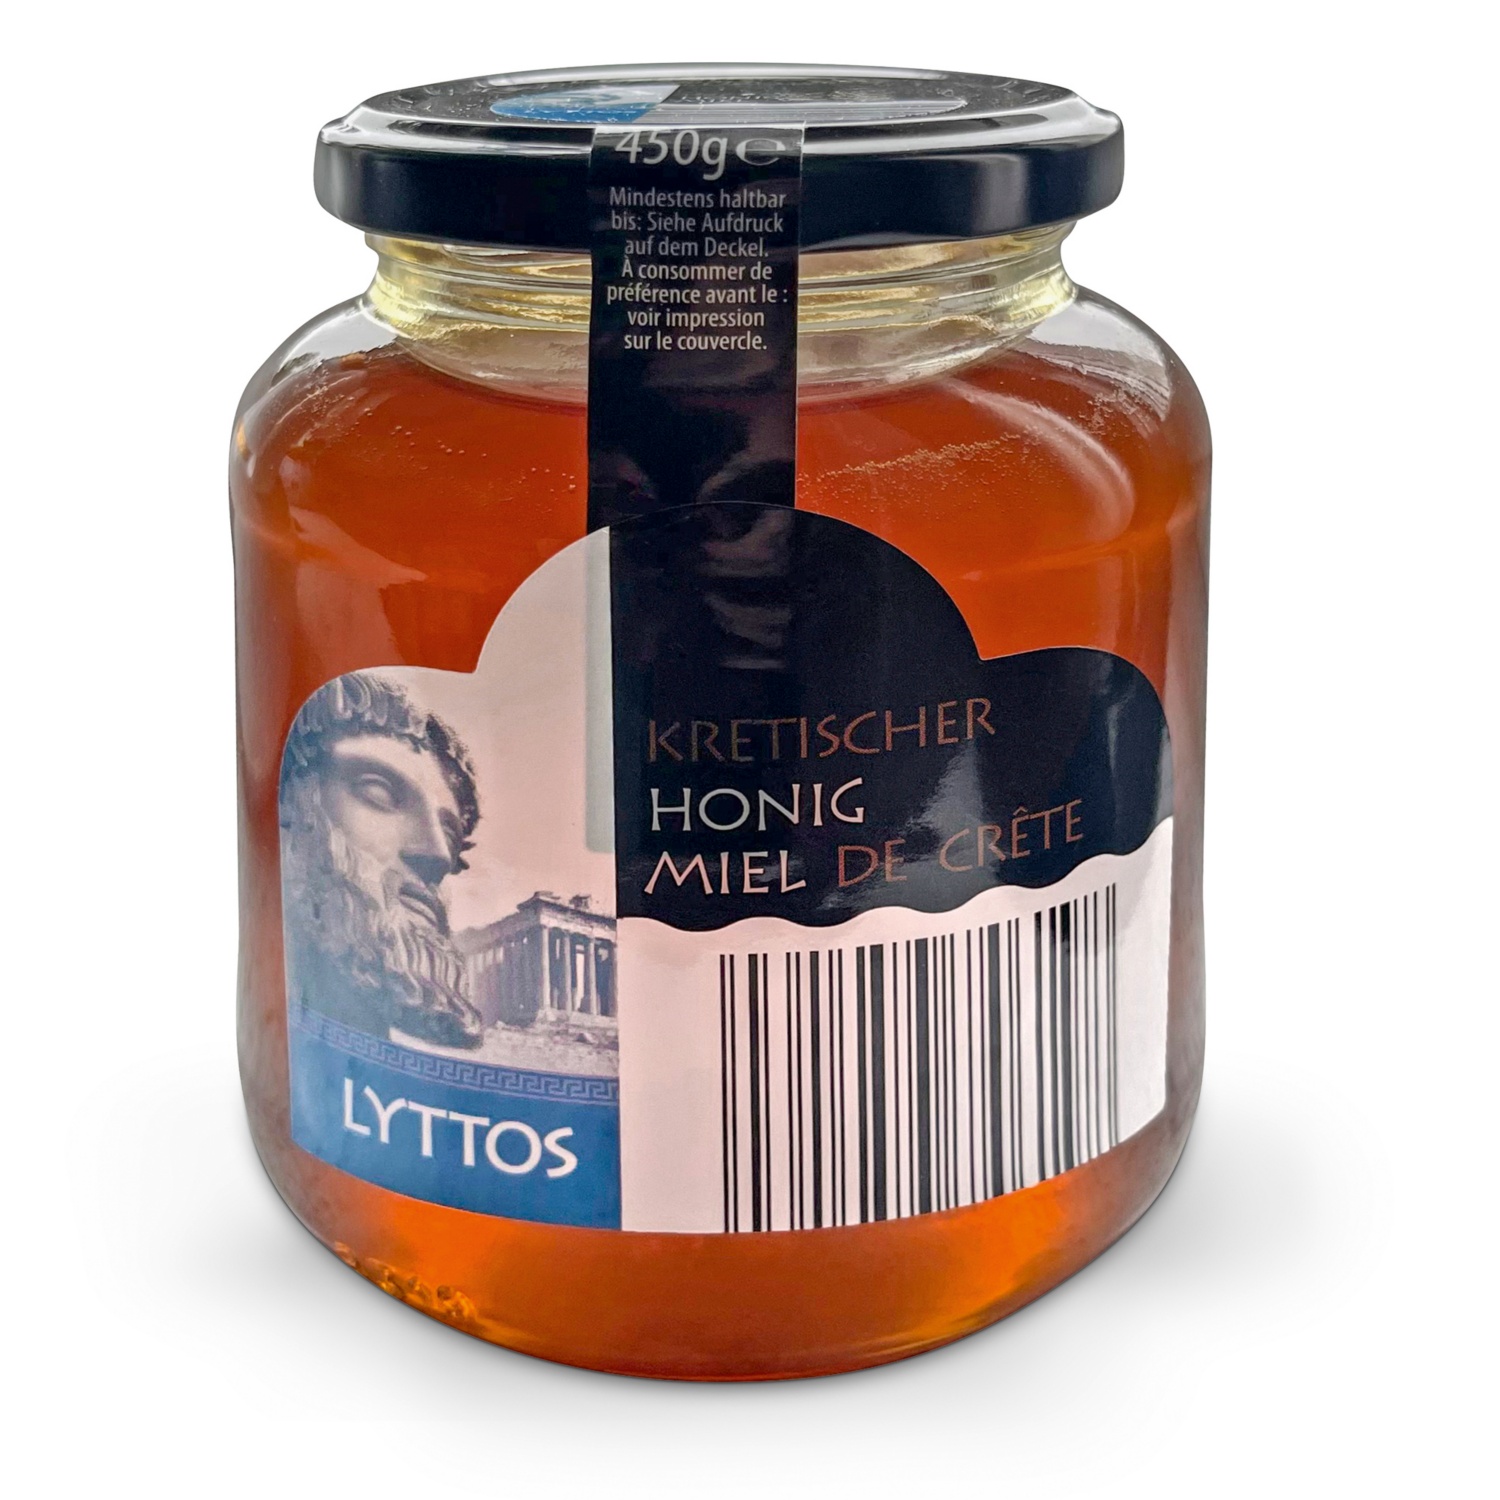 LYTTOS kretischer Honig